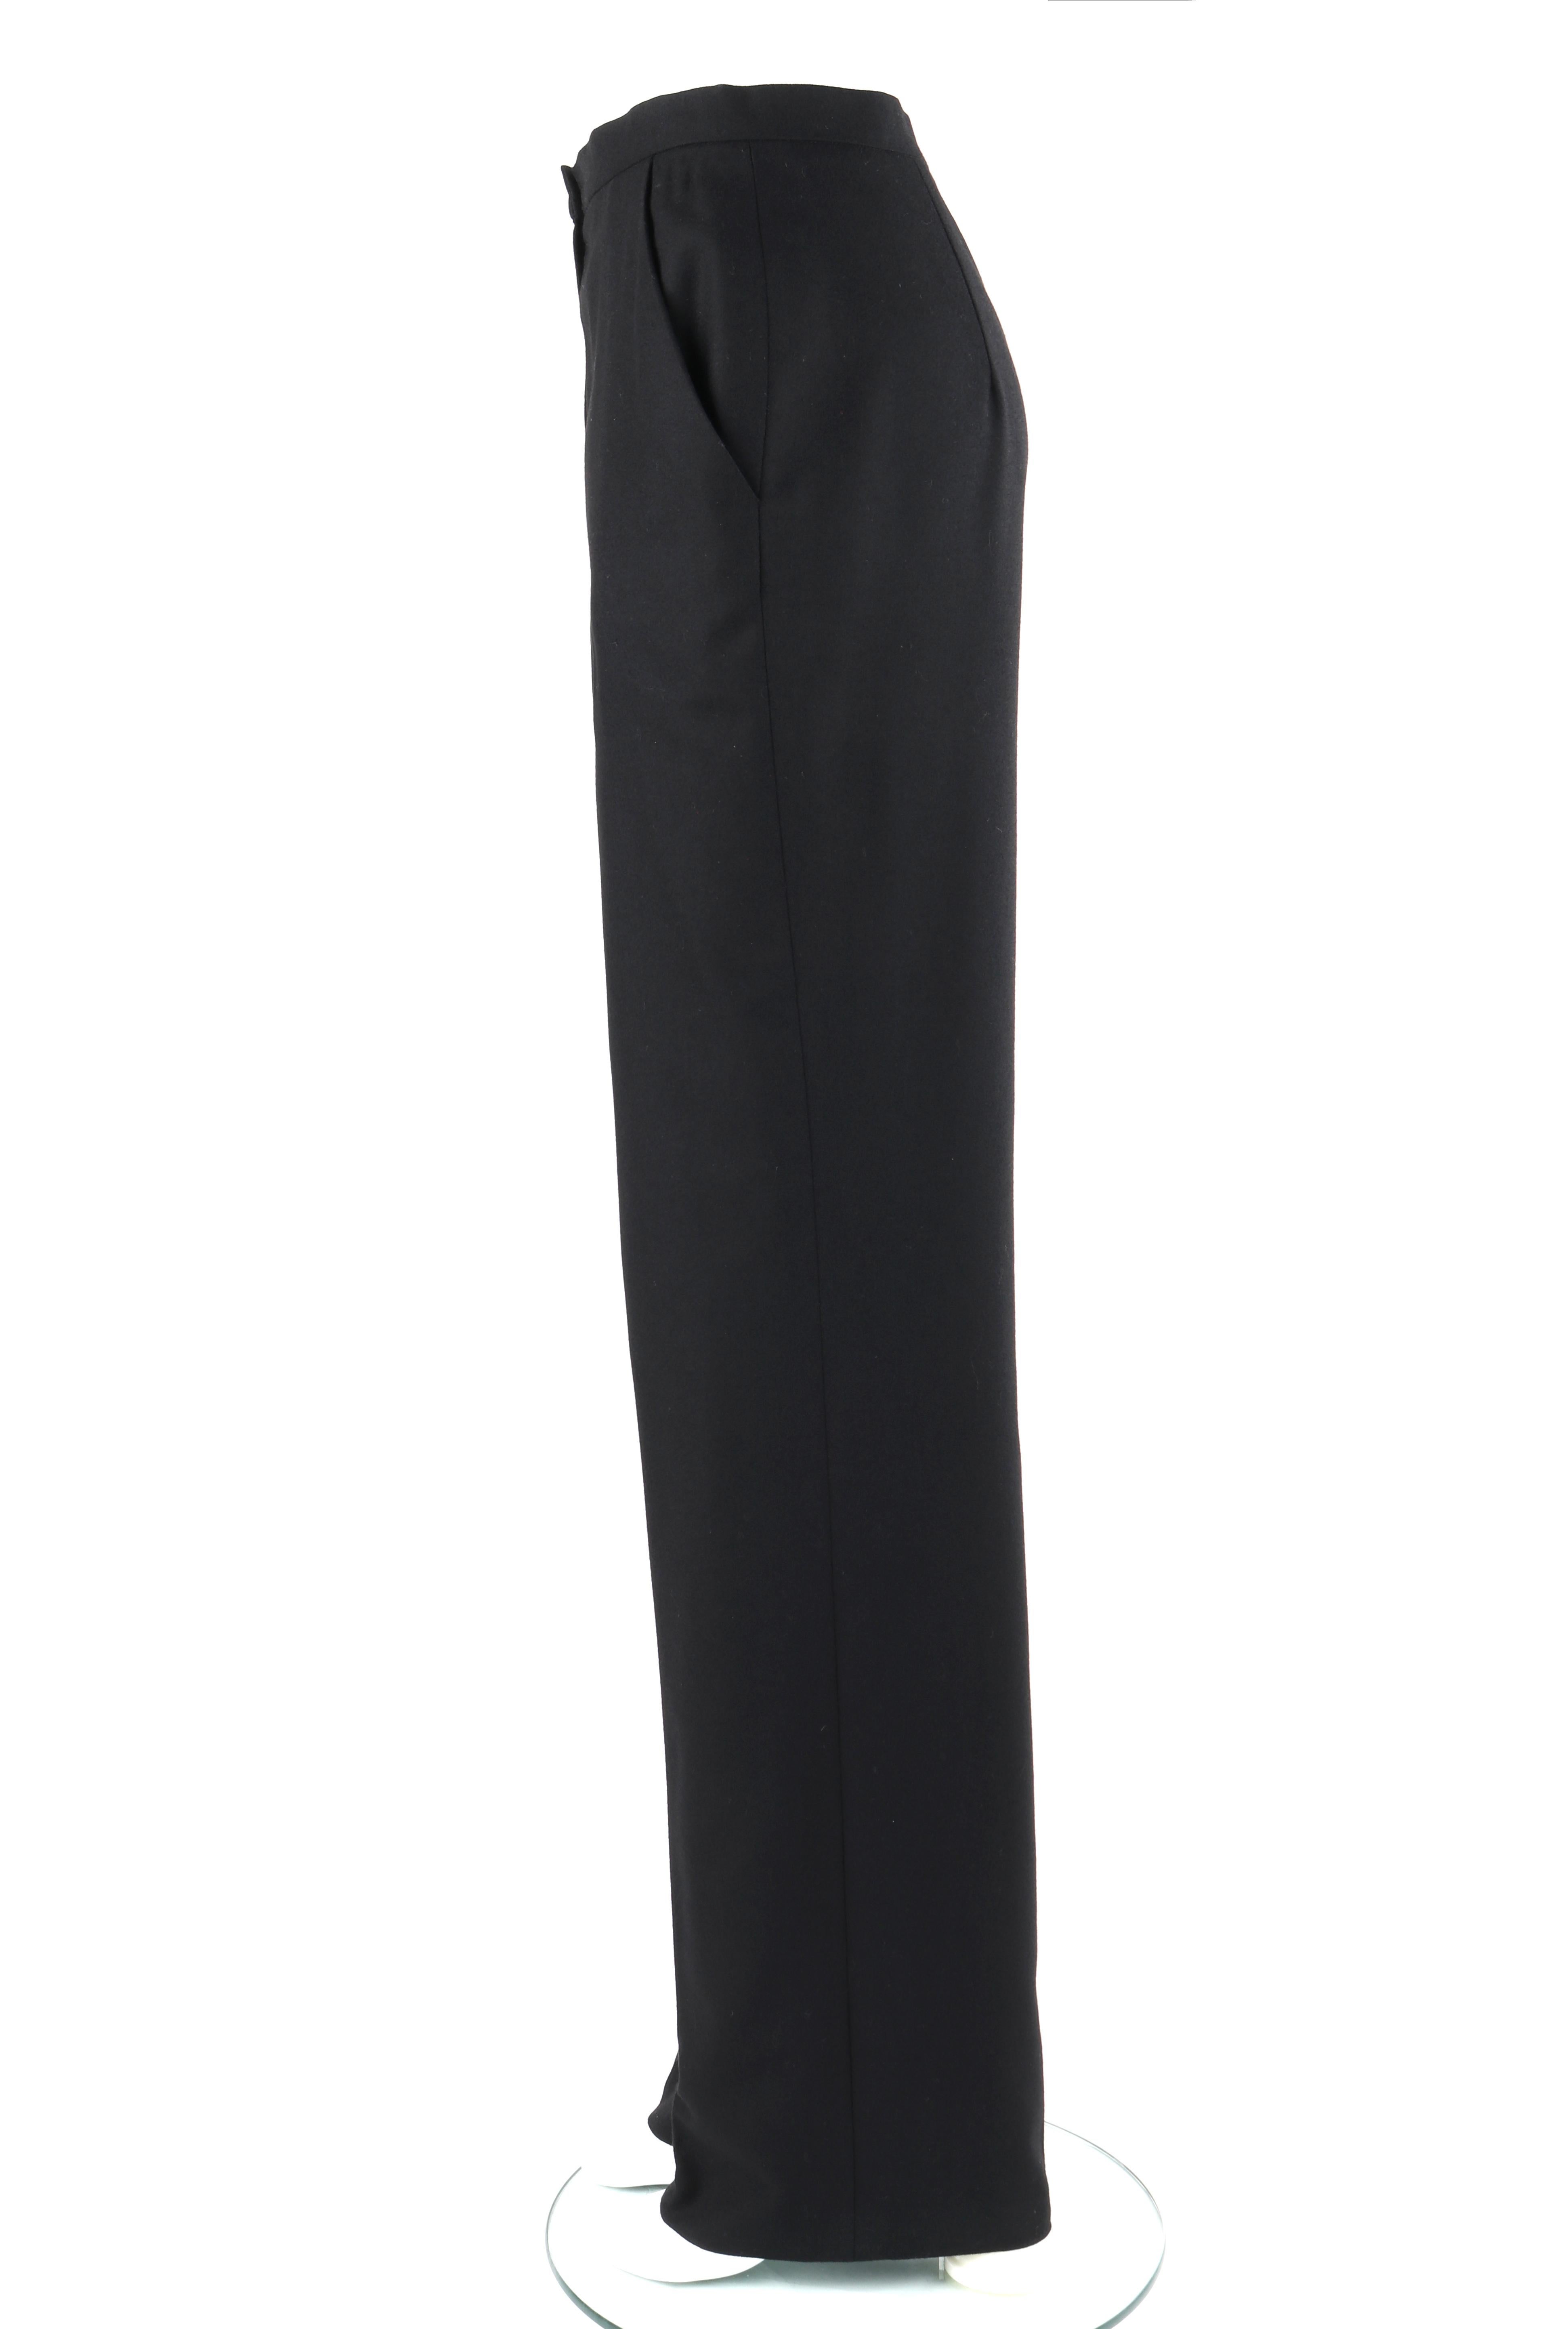 GIVENCHY Couture A/H 1998 ALEXANDER McQUEEN Pantalon noir à jambes droites Pour femmes en vente